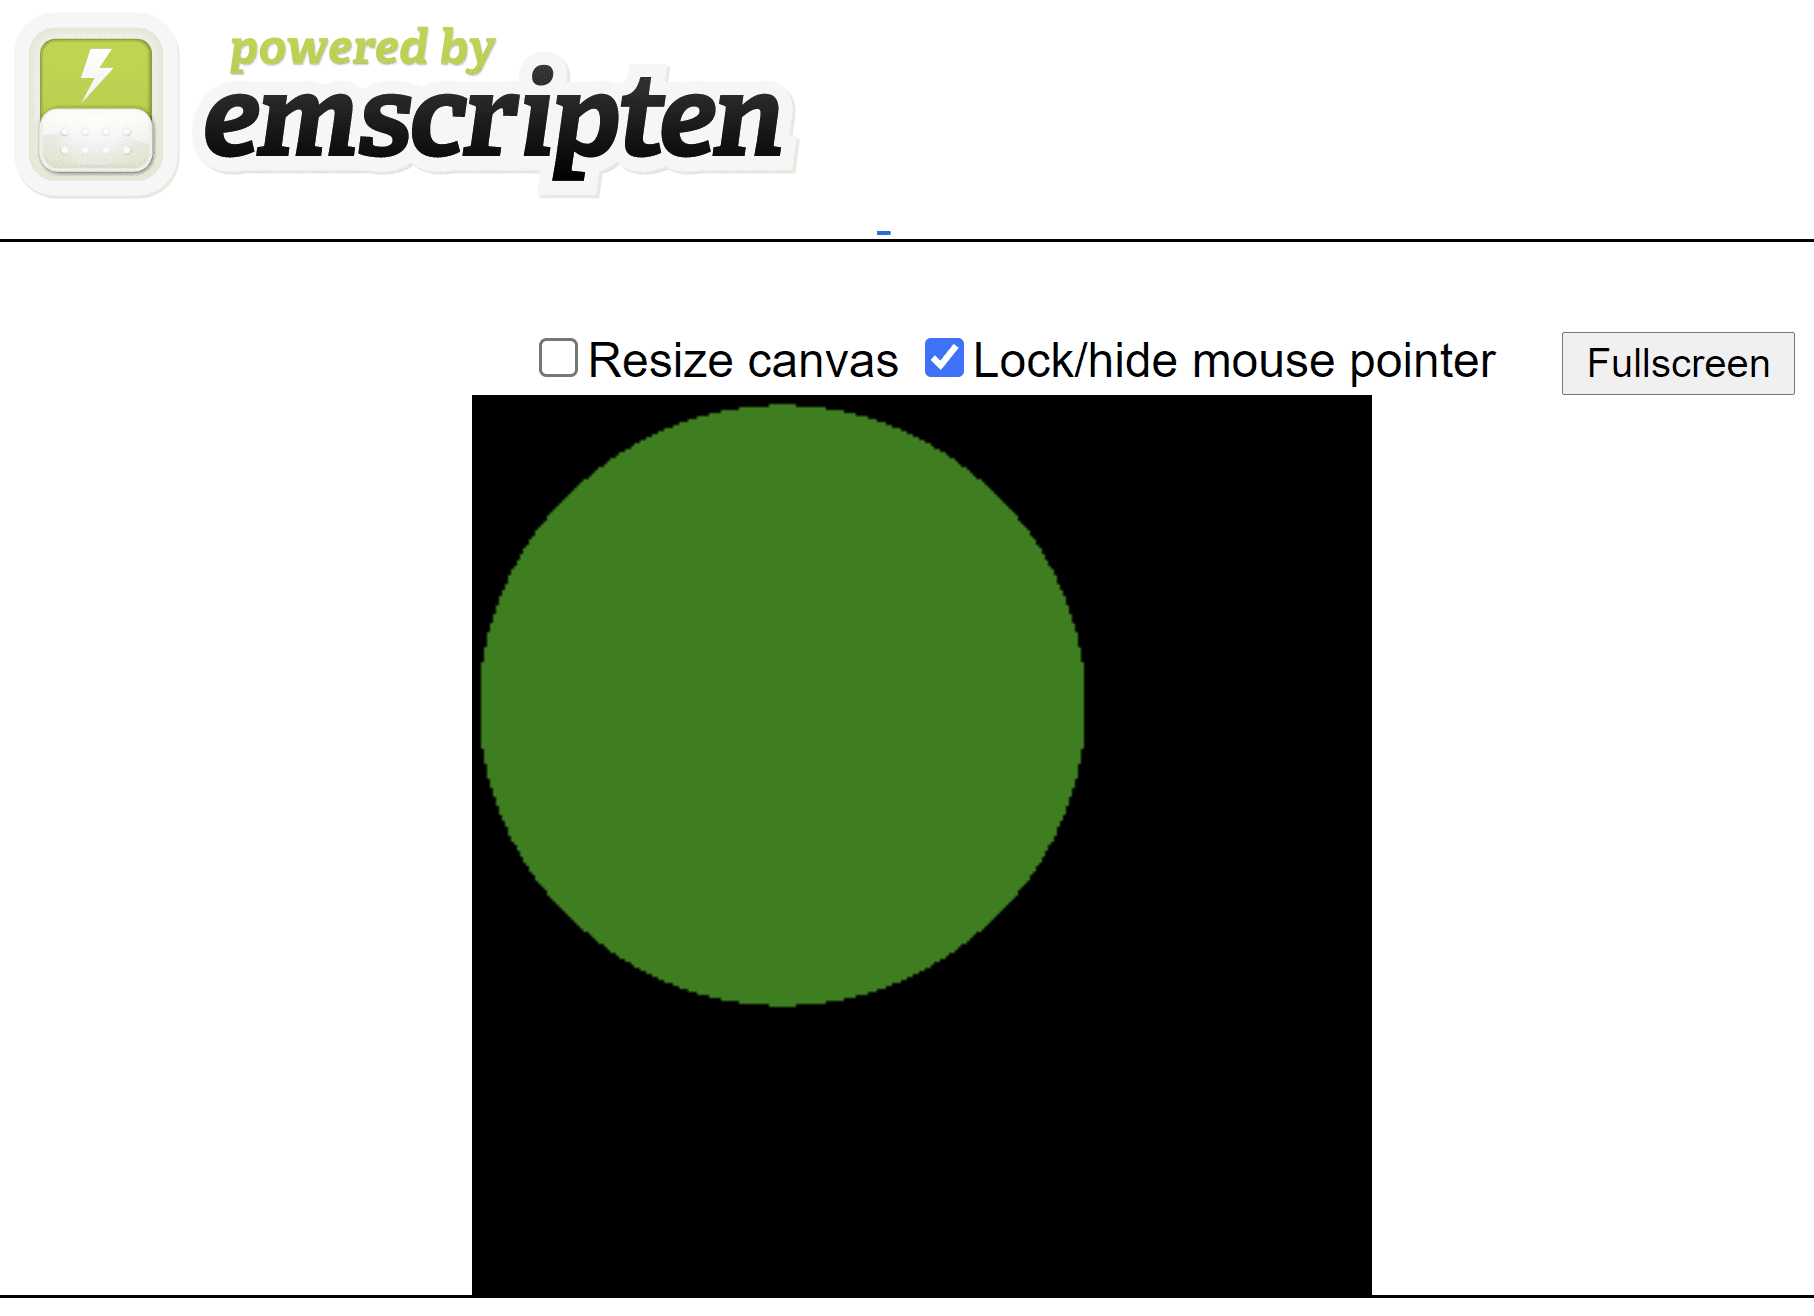 หน้า HTML ที่สร้างด้วย Emscripten แสดงวงกลมสีเขียวบนผืนผ้าใบสี่เหลี่ยมจัตุรัสสีดำ